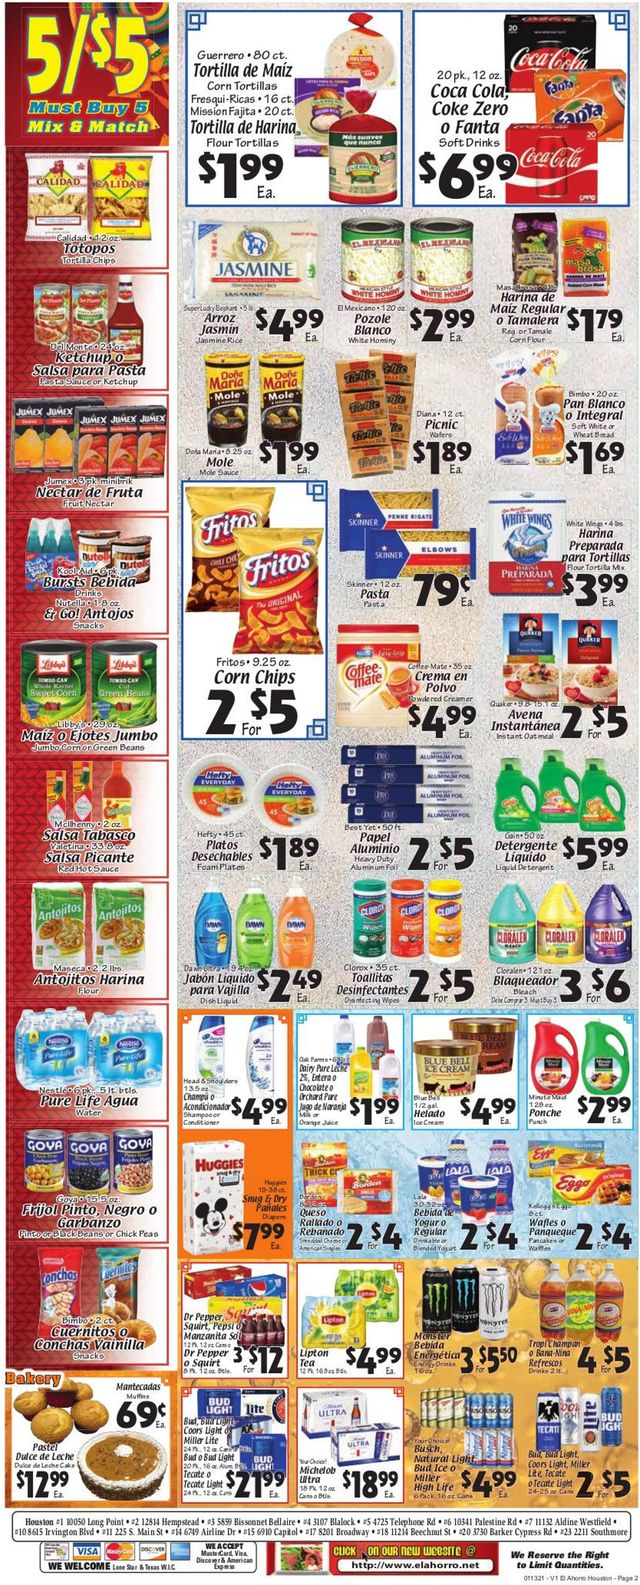 El Ahorro Supermarket Ad from 01/13/2021